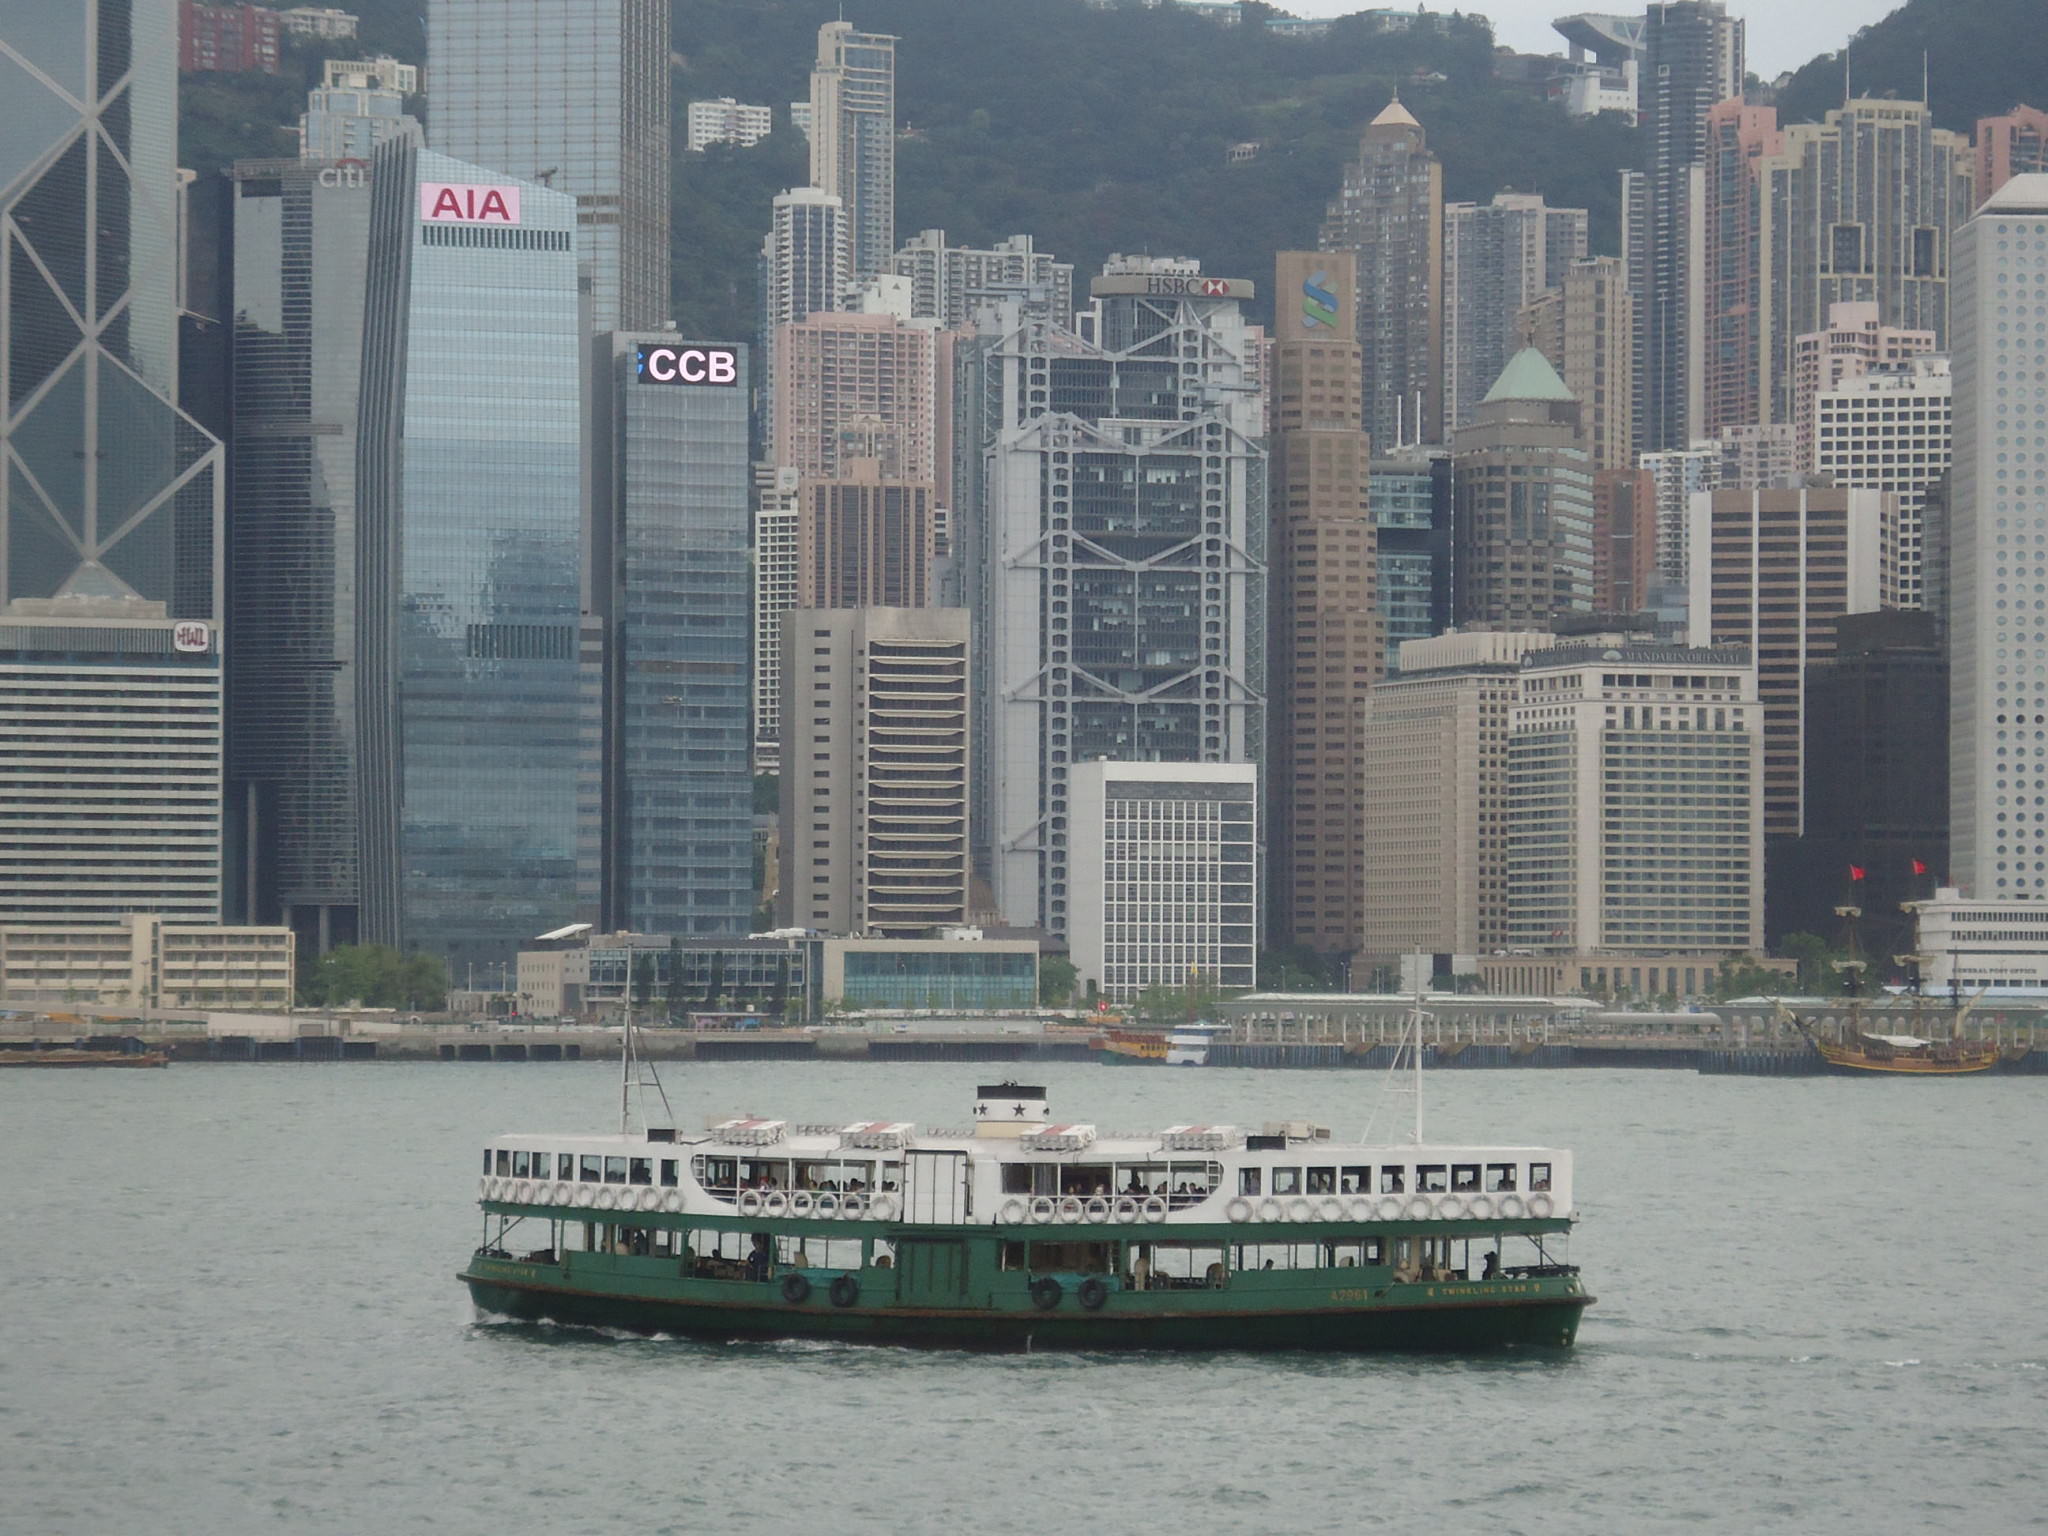 star ferry hong kong tsim sha tsui